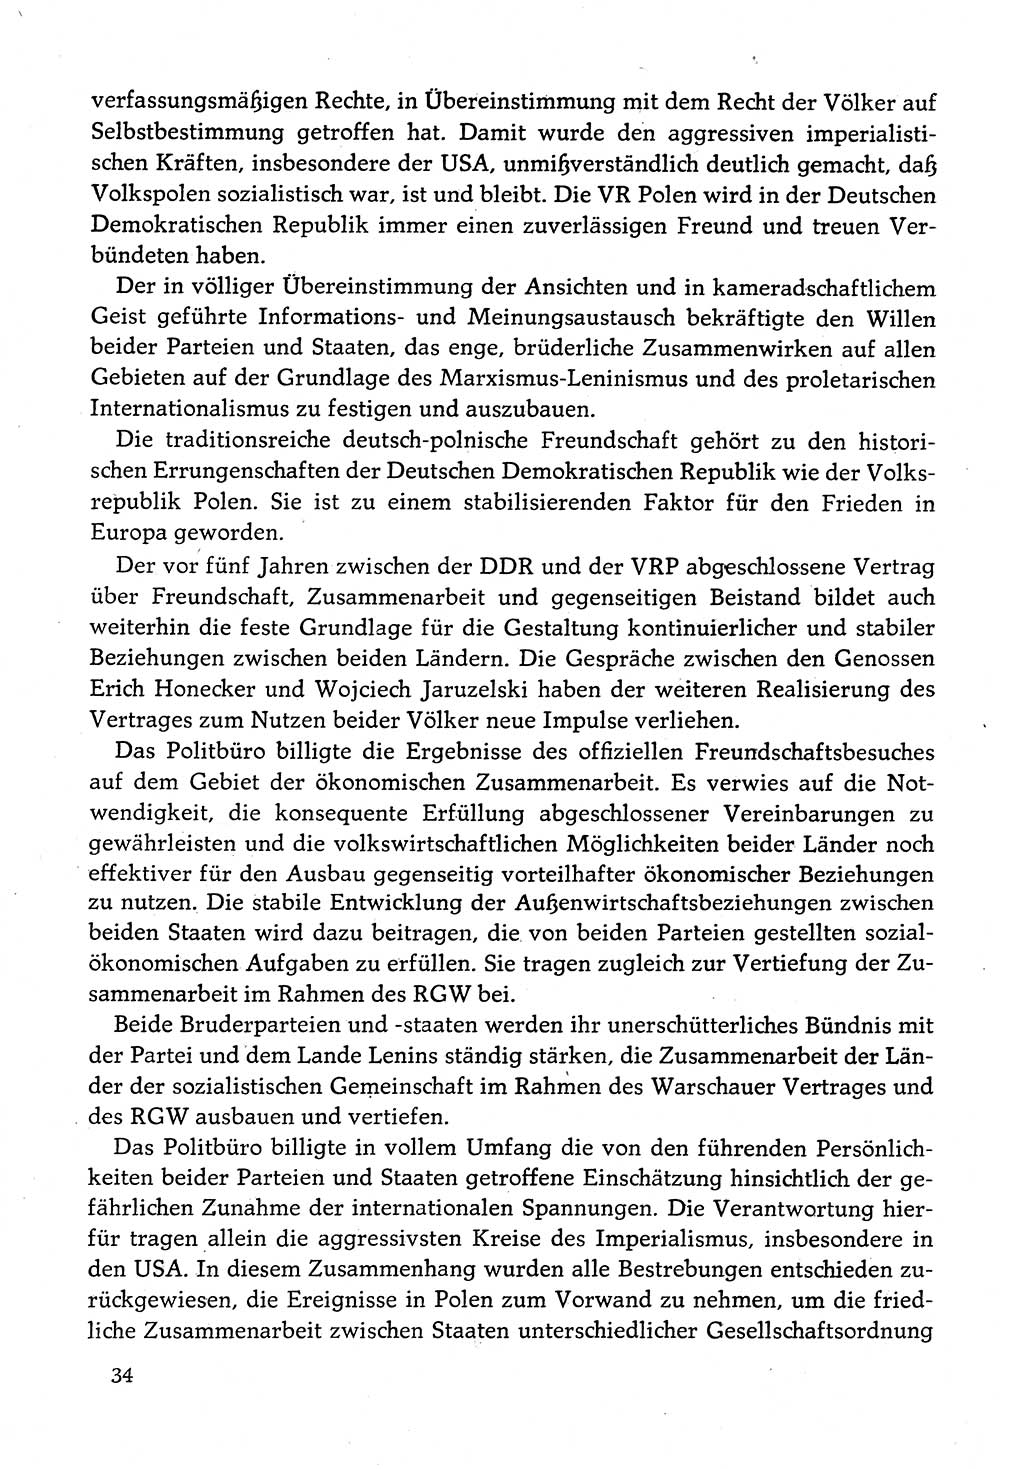 Dokumente der Sozialistischen Einheitspartei Deutschlands (SED) [Deutsche Demokratische Republik (DDR)] 1982-1983, Seite 34 (Dok. SED DDR 1982-1983, S. 34)